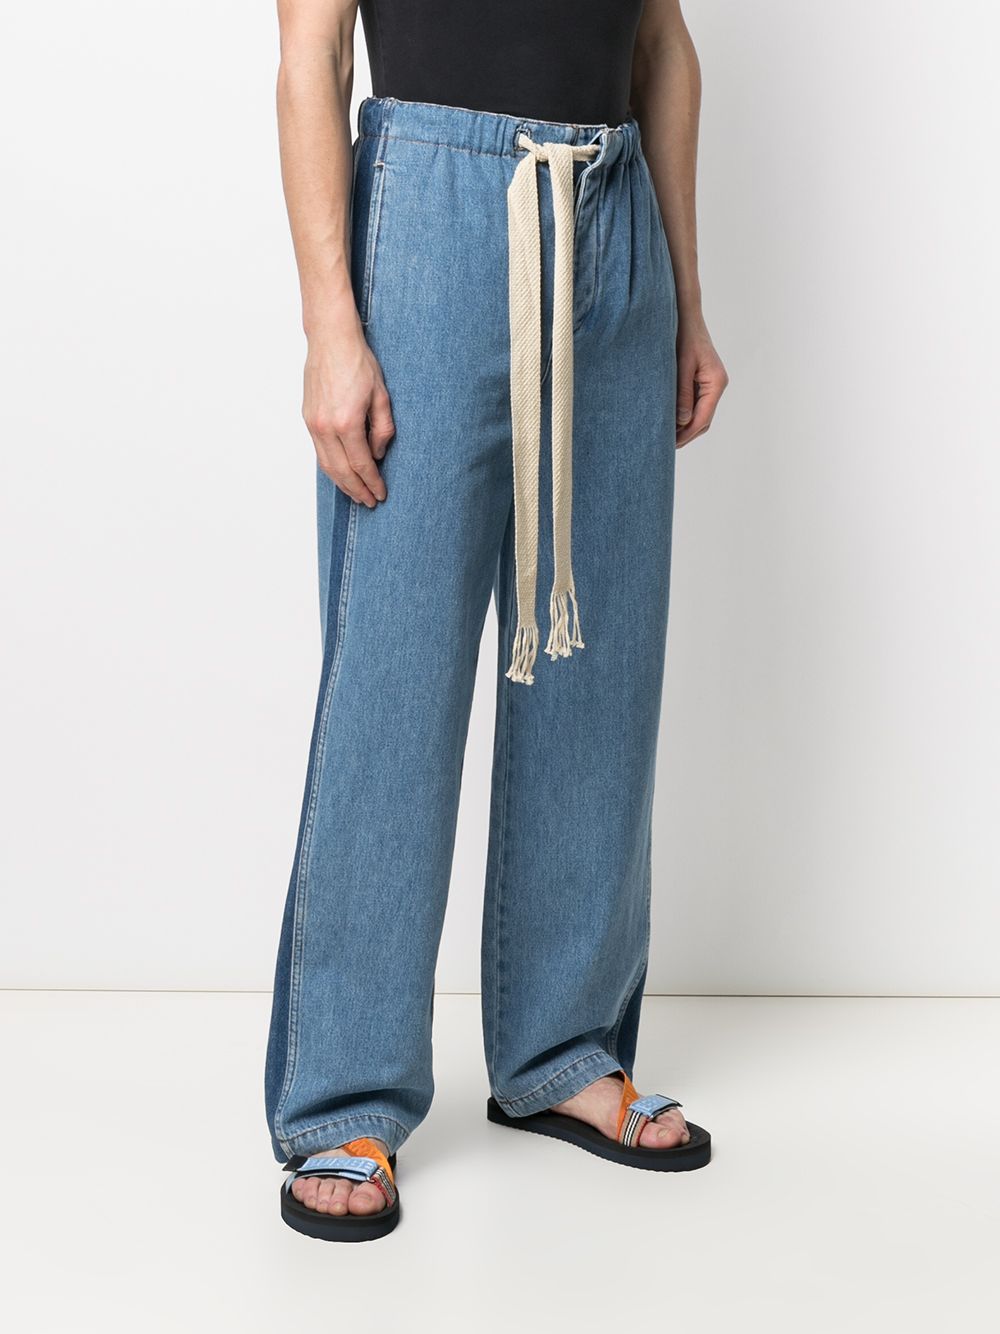 фото Loewe джинсы с кулиской и лампасами